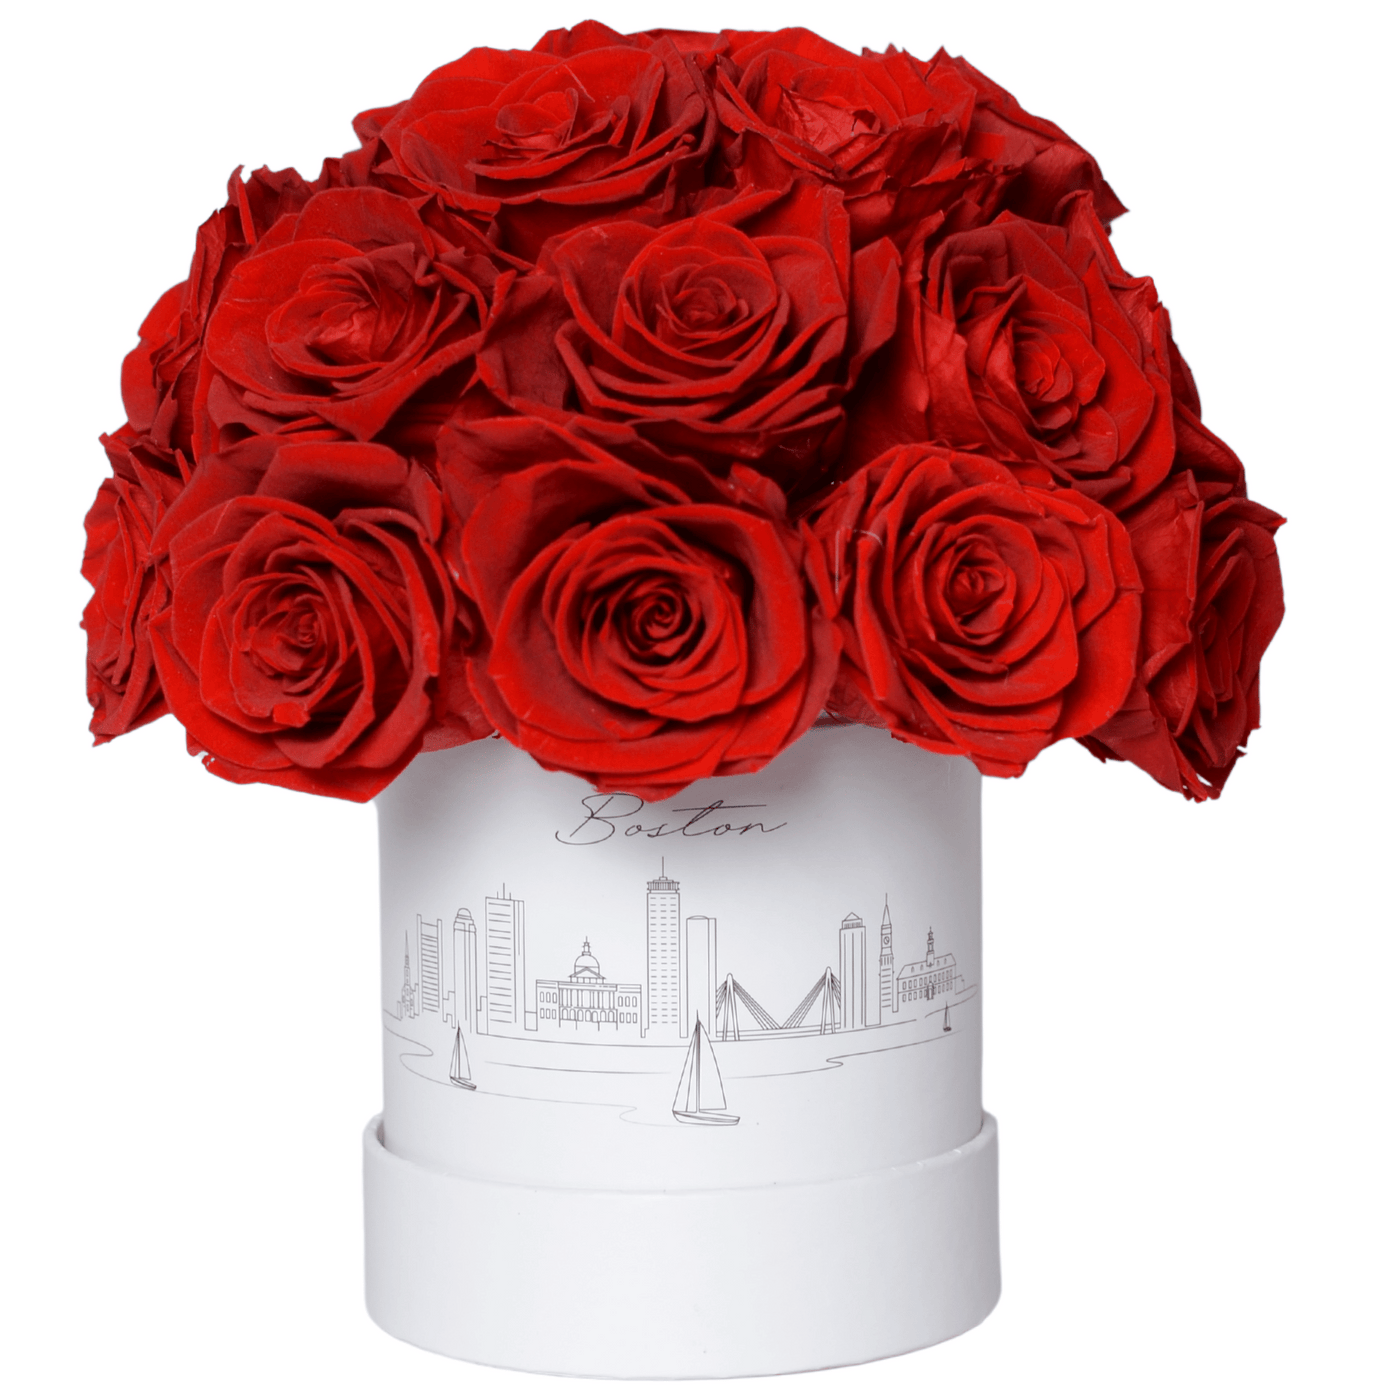 Boston Forever Rose Ball - Preserved Roses with Boston Skyline Design